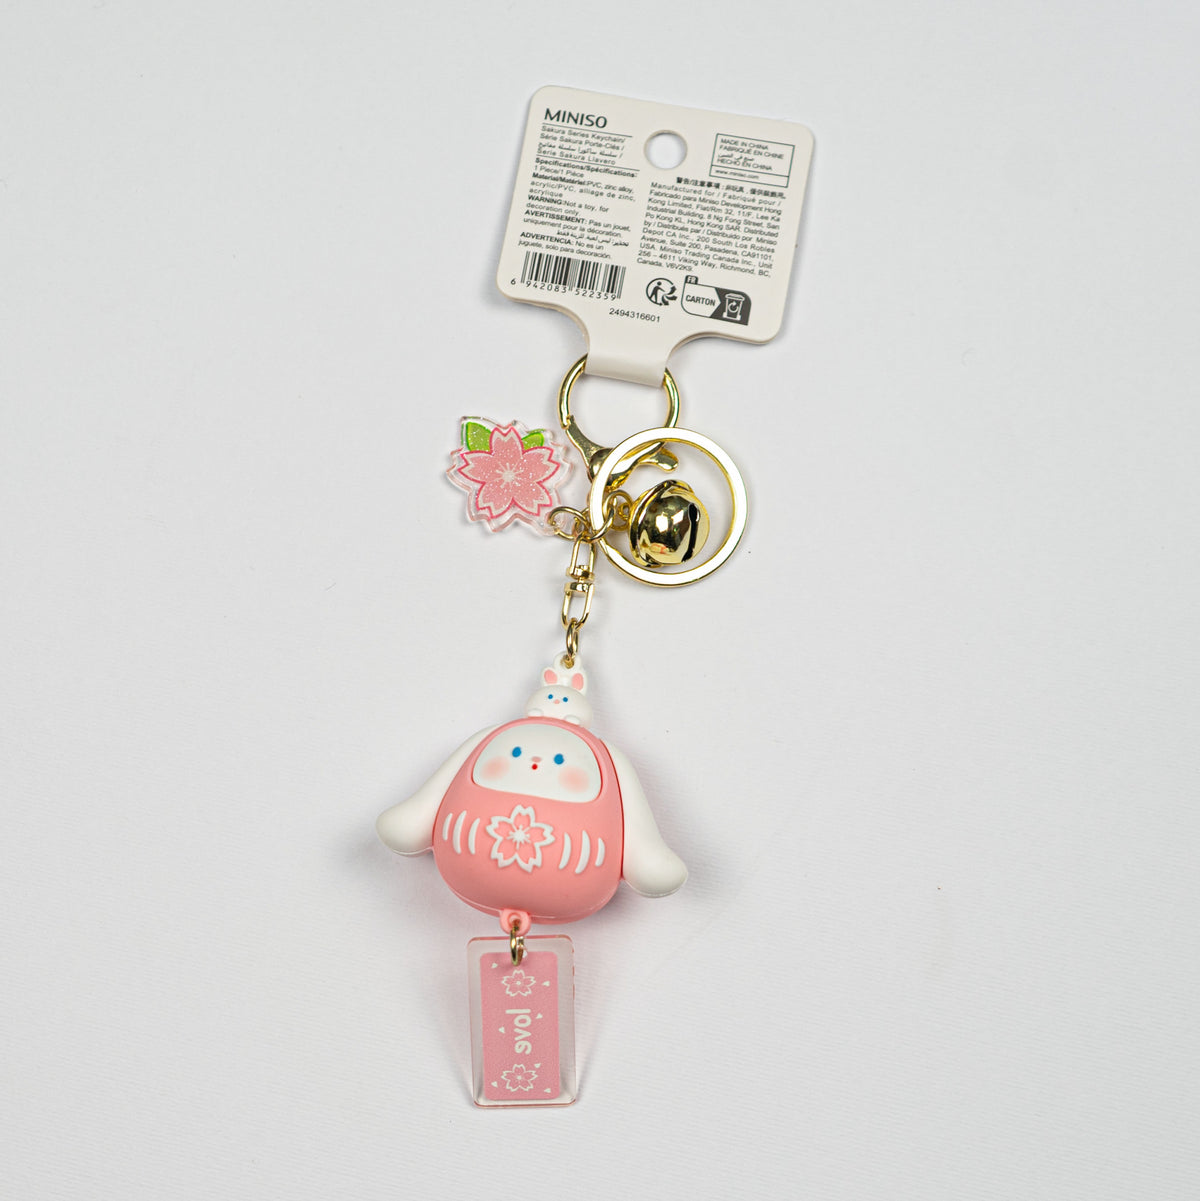 Portachaivi Sakura con pendente e campanello miniso keychain